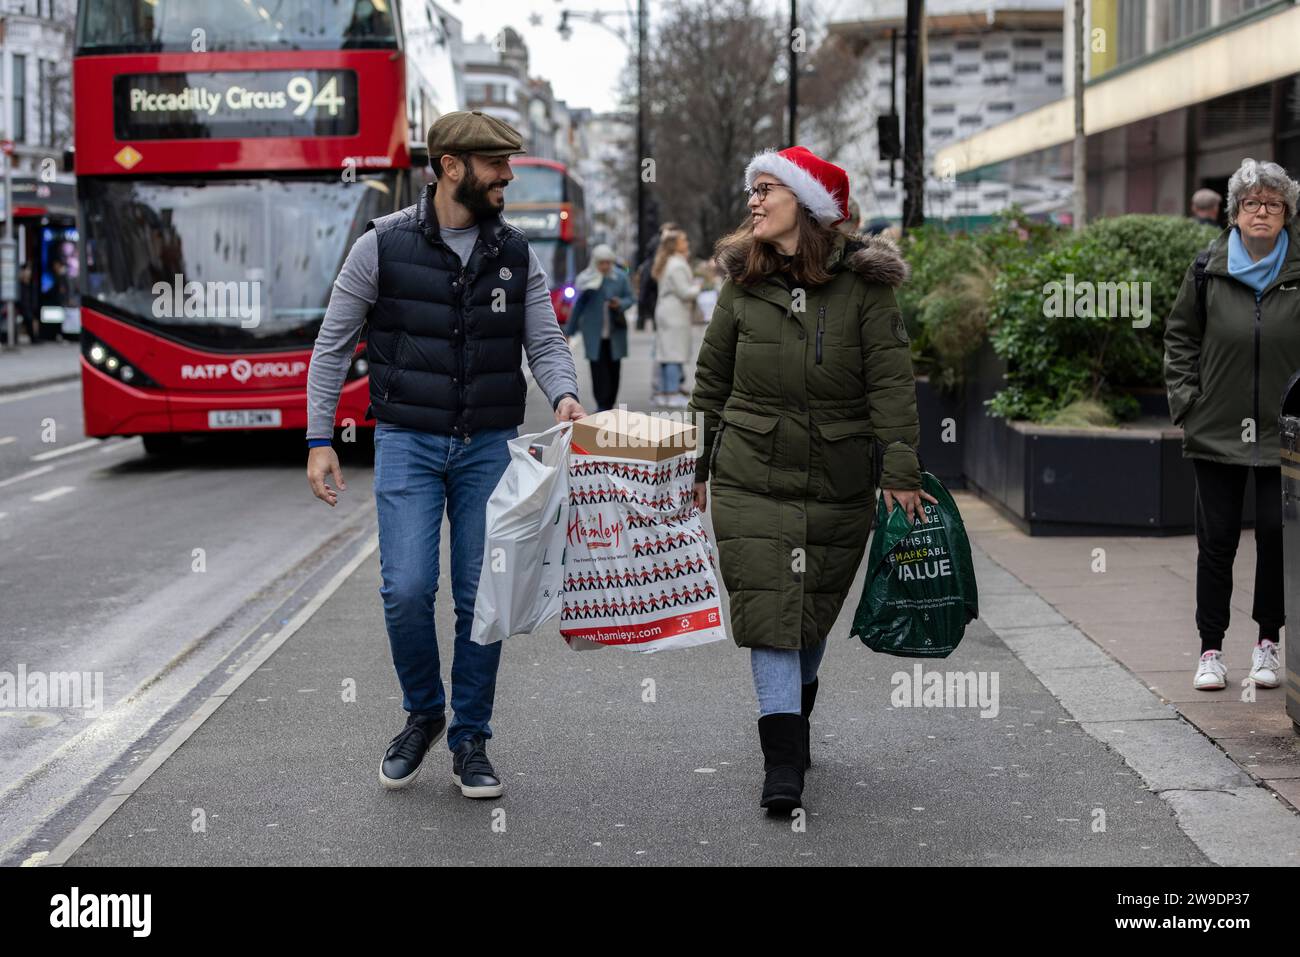 Les acheteurs de Noël le long d'Oxford Street lors de la dernière journée principale de shopping de la saison des fêtes avant Noël, Londres, Angleterre, Royaume-Uni Banque D'Images